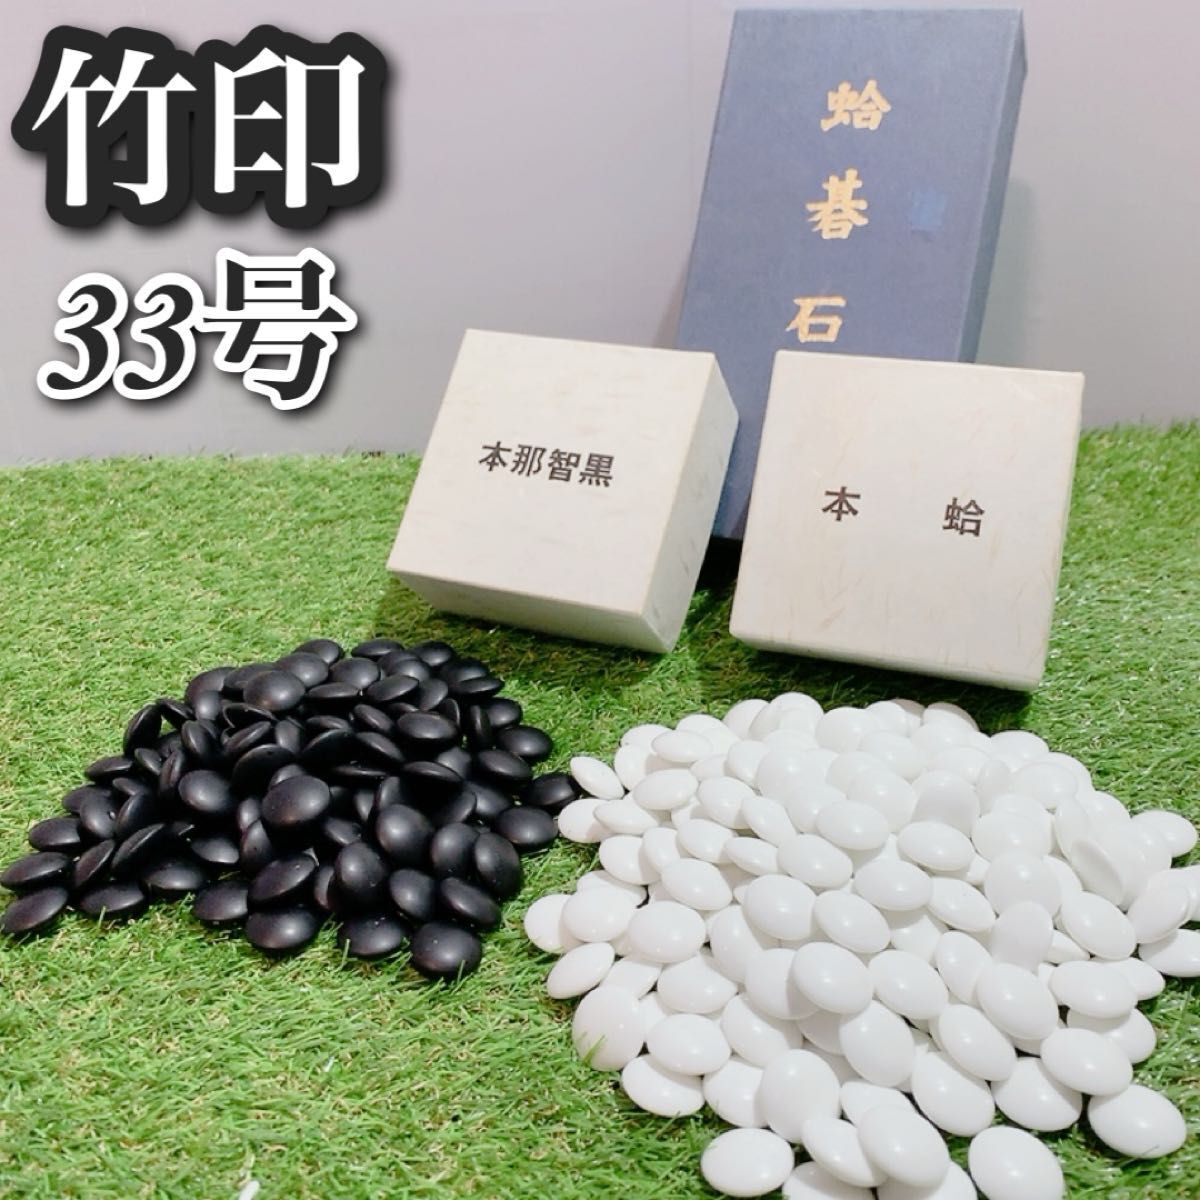  камни для Го Го книга@ моллюск камни для Го книга@.. чёрный есть моллюск камни для Го 33 номер сосна печать практическое использование основной высококлассный камни для Го 